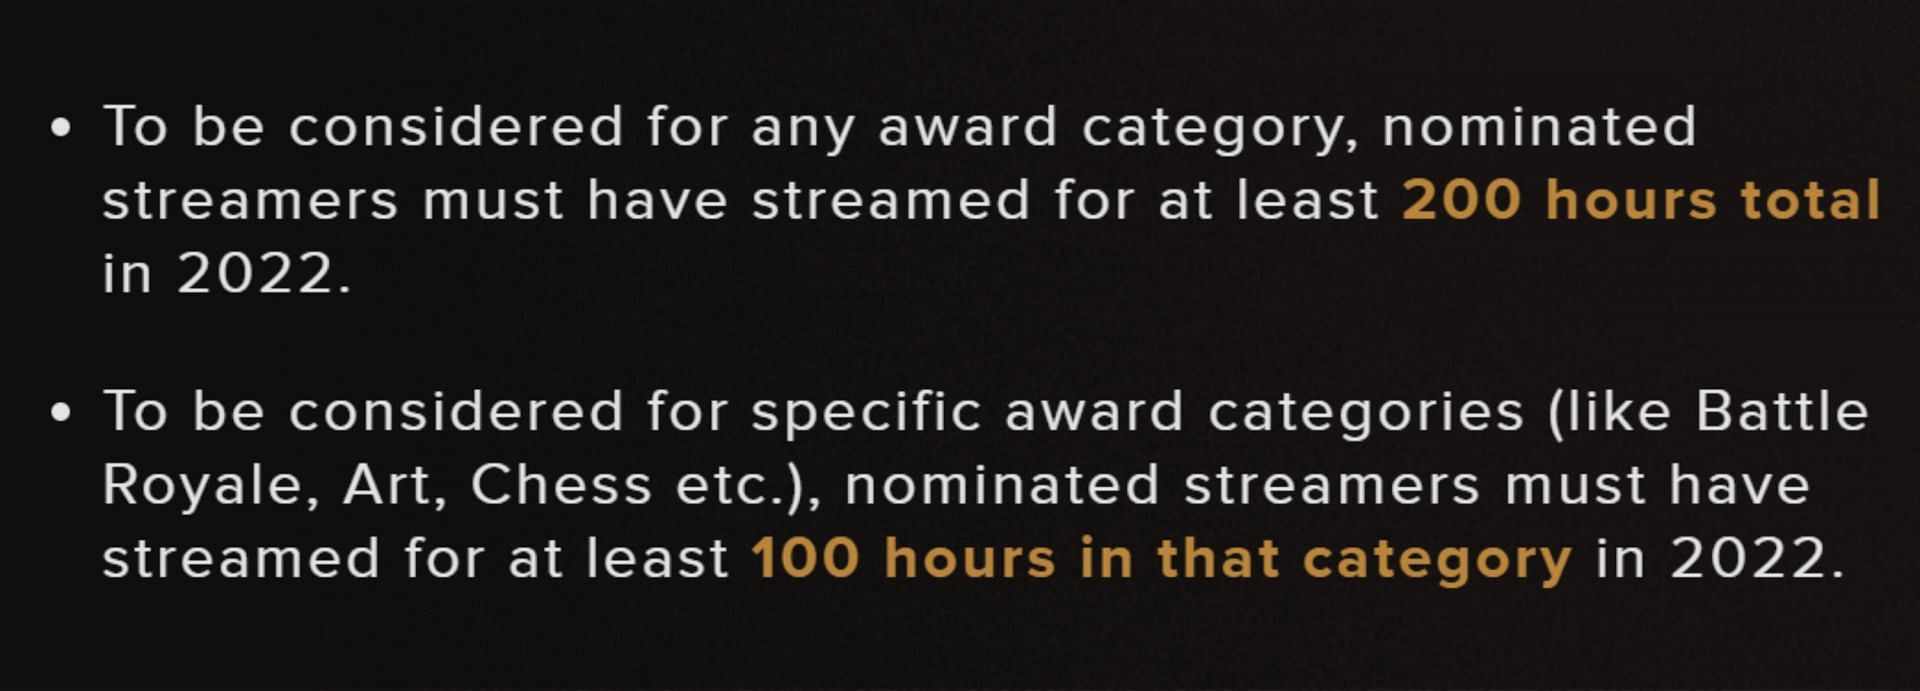 The criteria for the nominees (Image via Streamerawards.com)